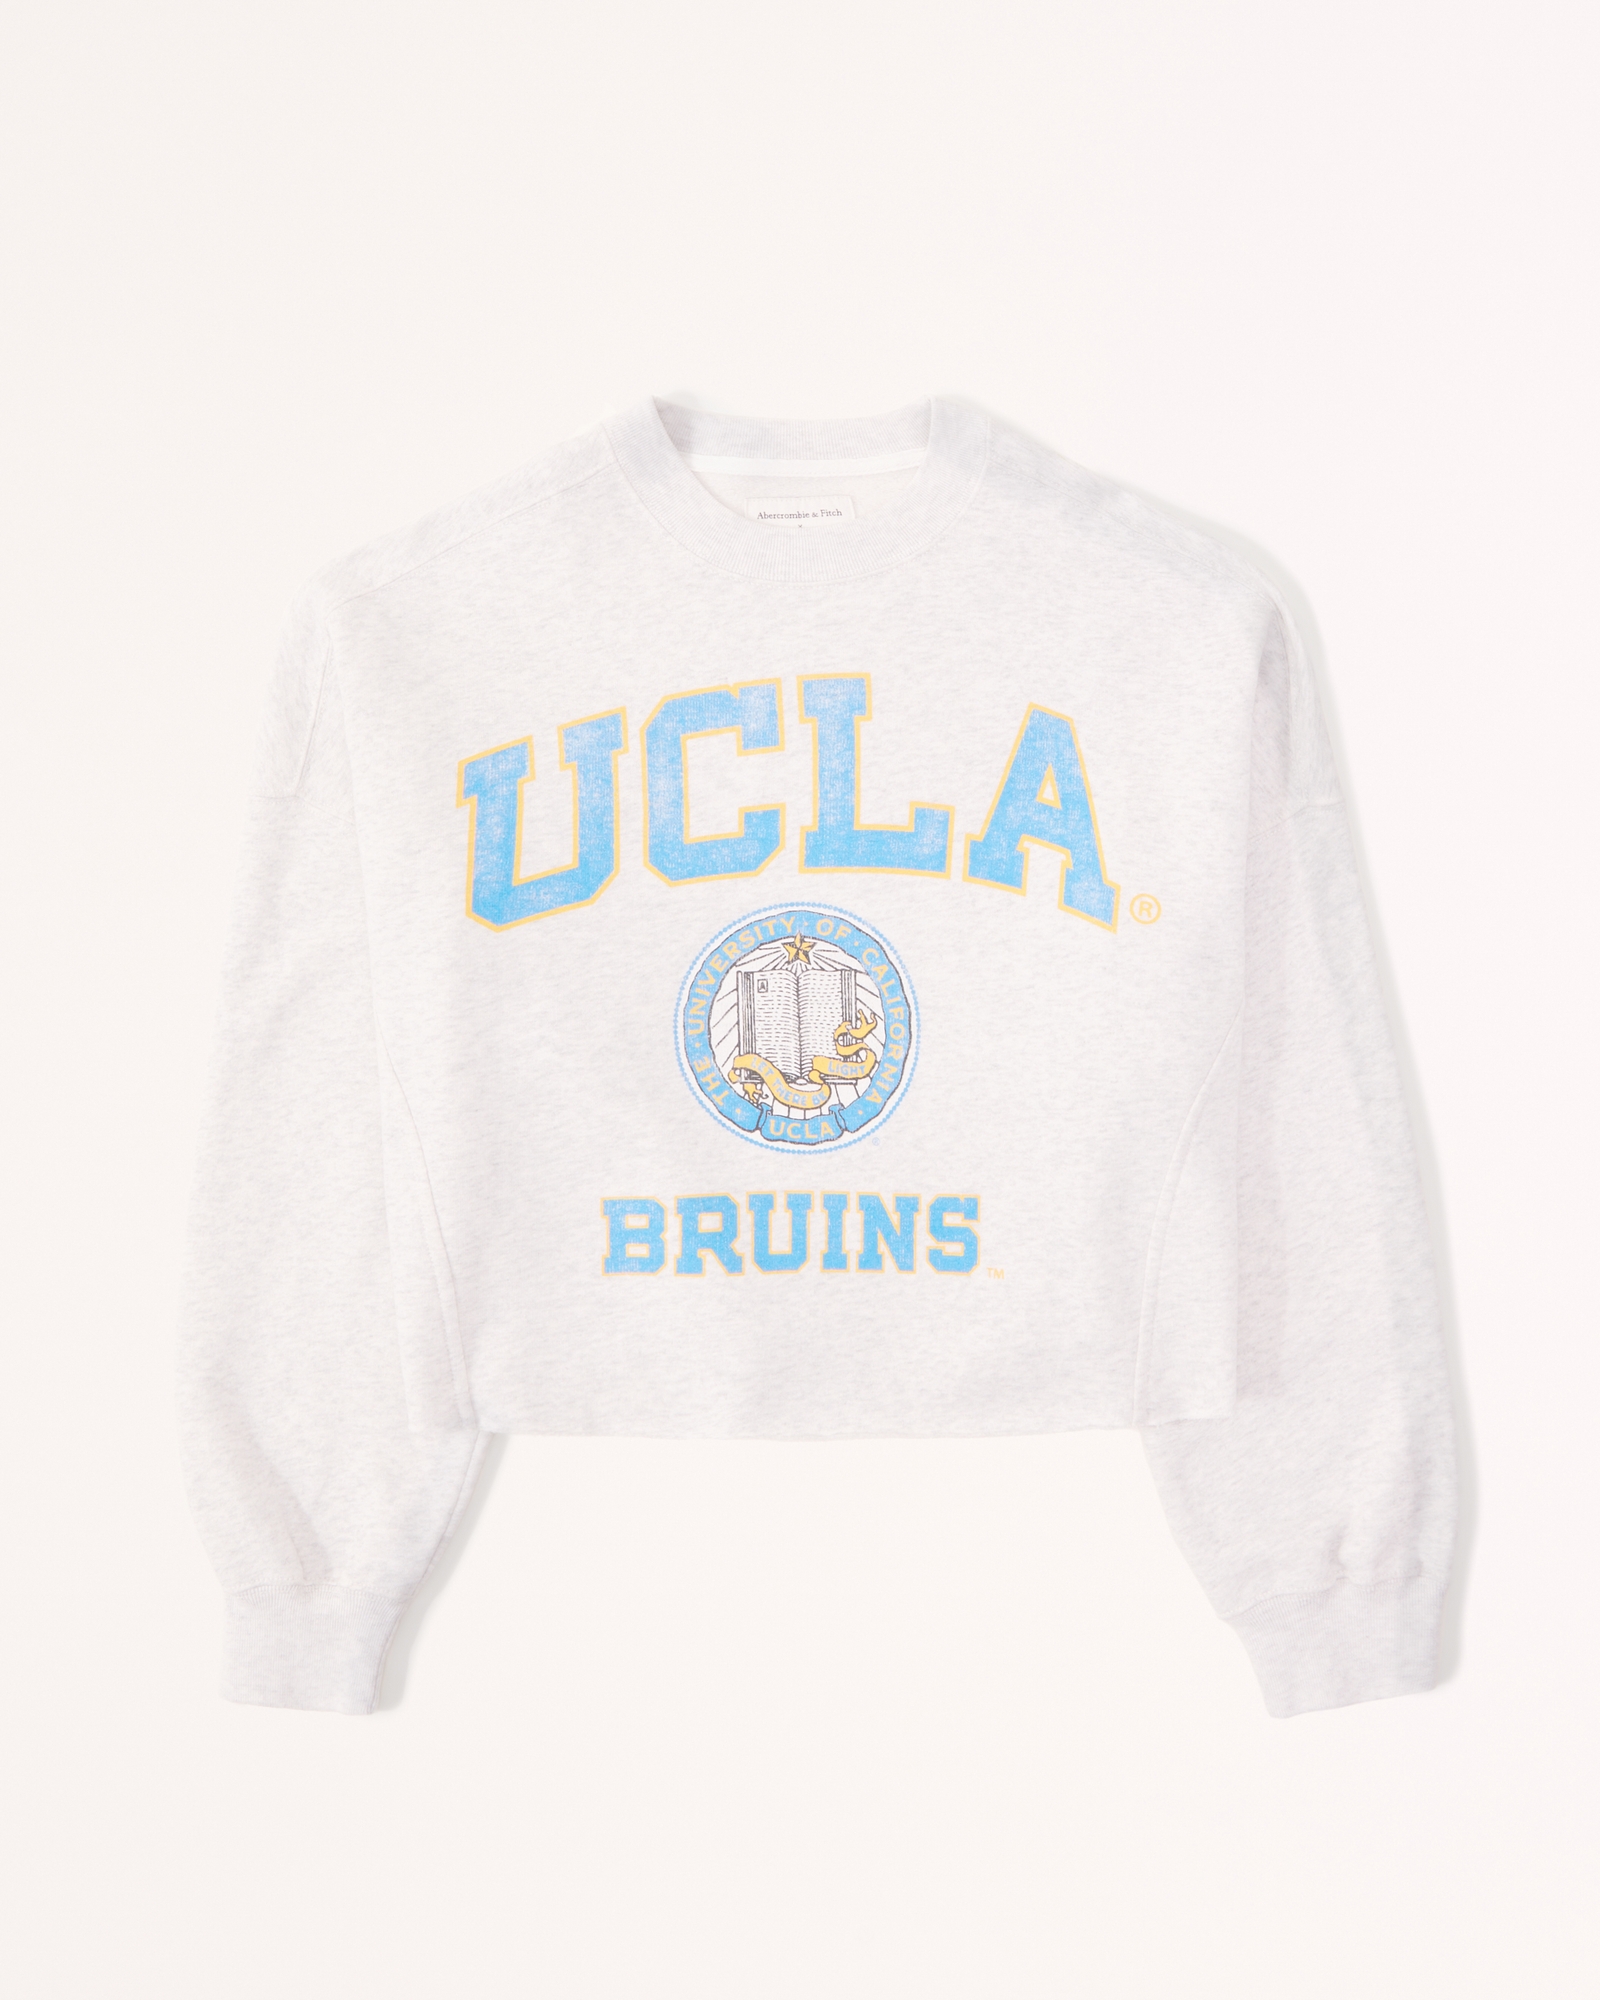 90s UCLA Bruins Sweatshirt - Men's Medium, Women's Large